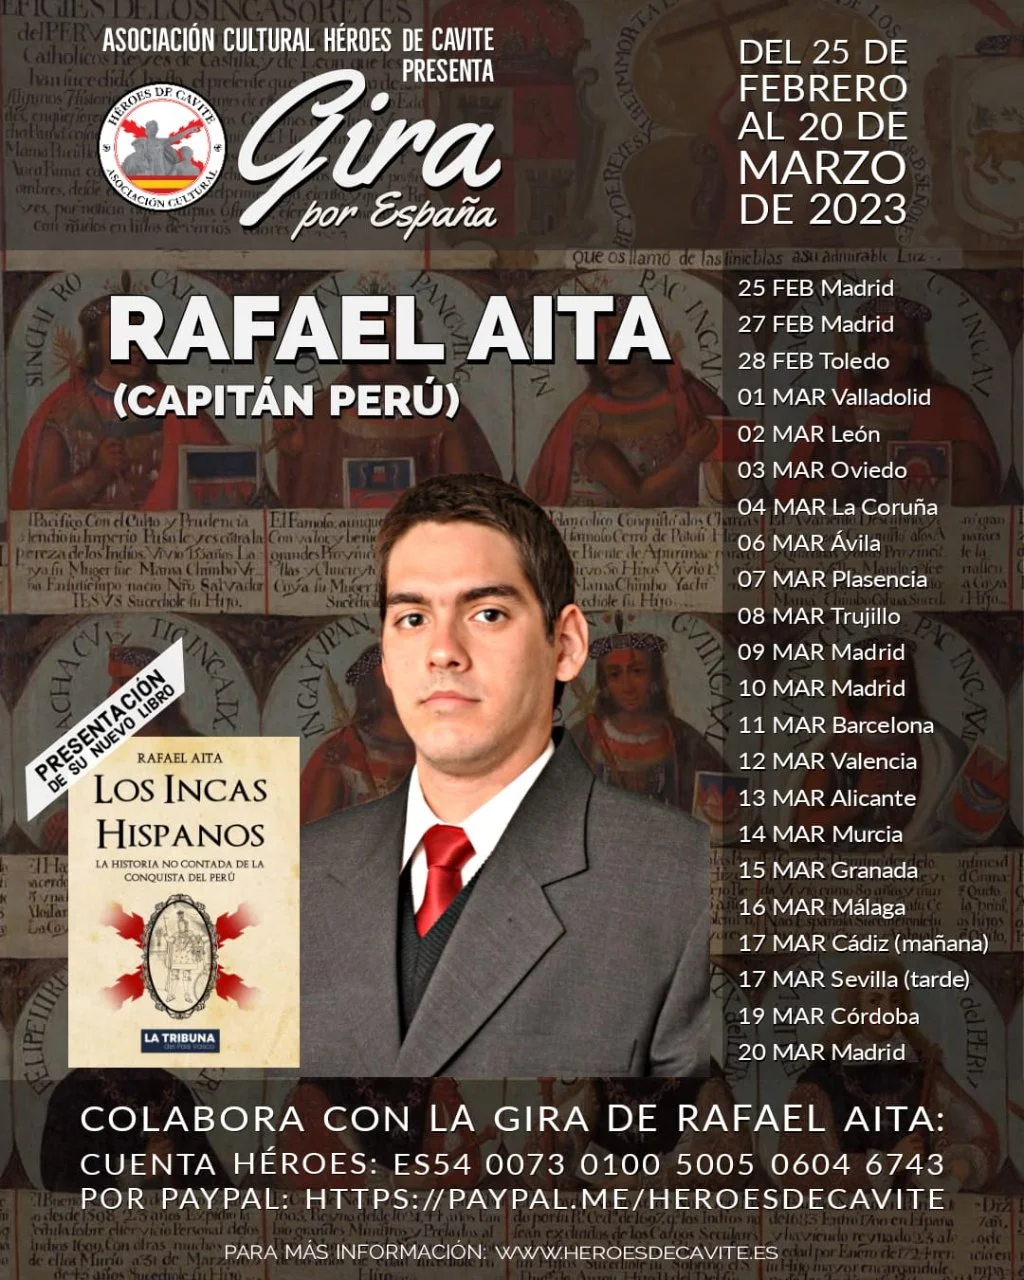 LOS INCAS HISPANOS - Rafael Aita 